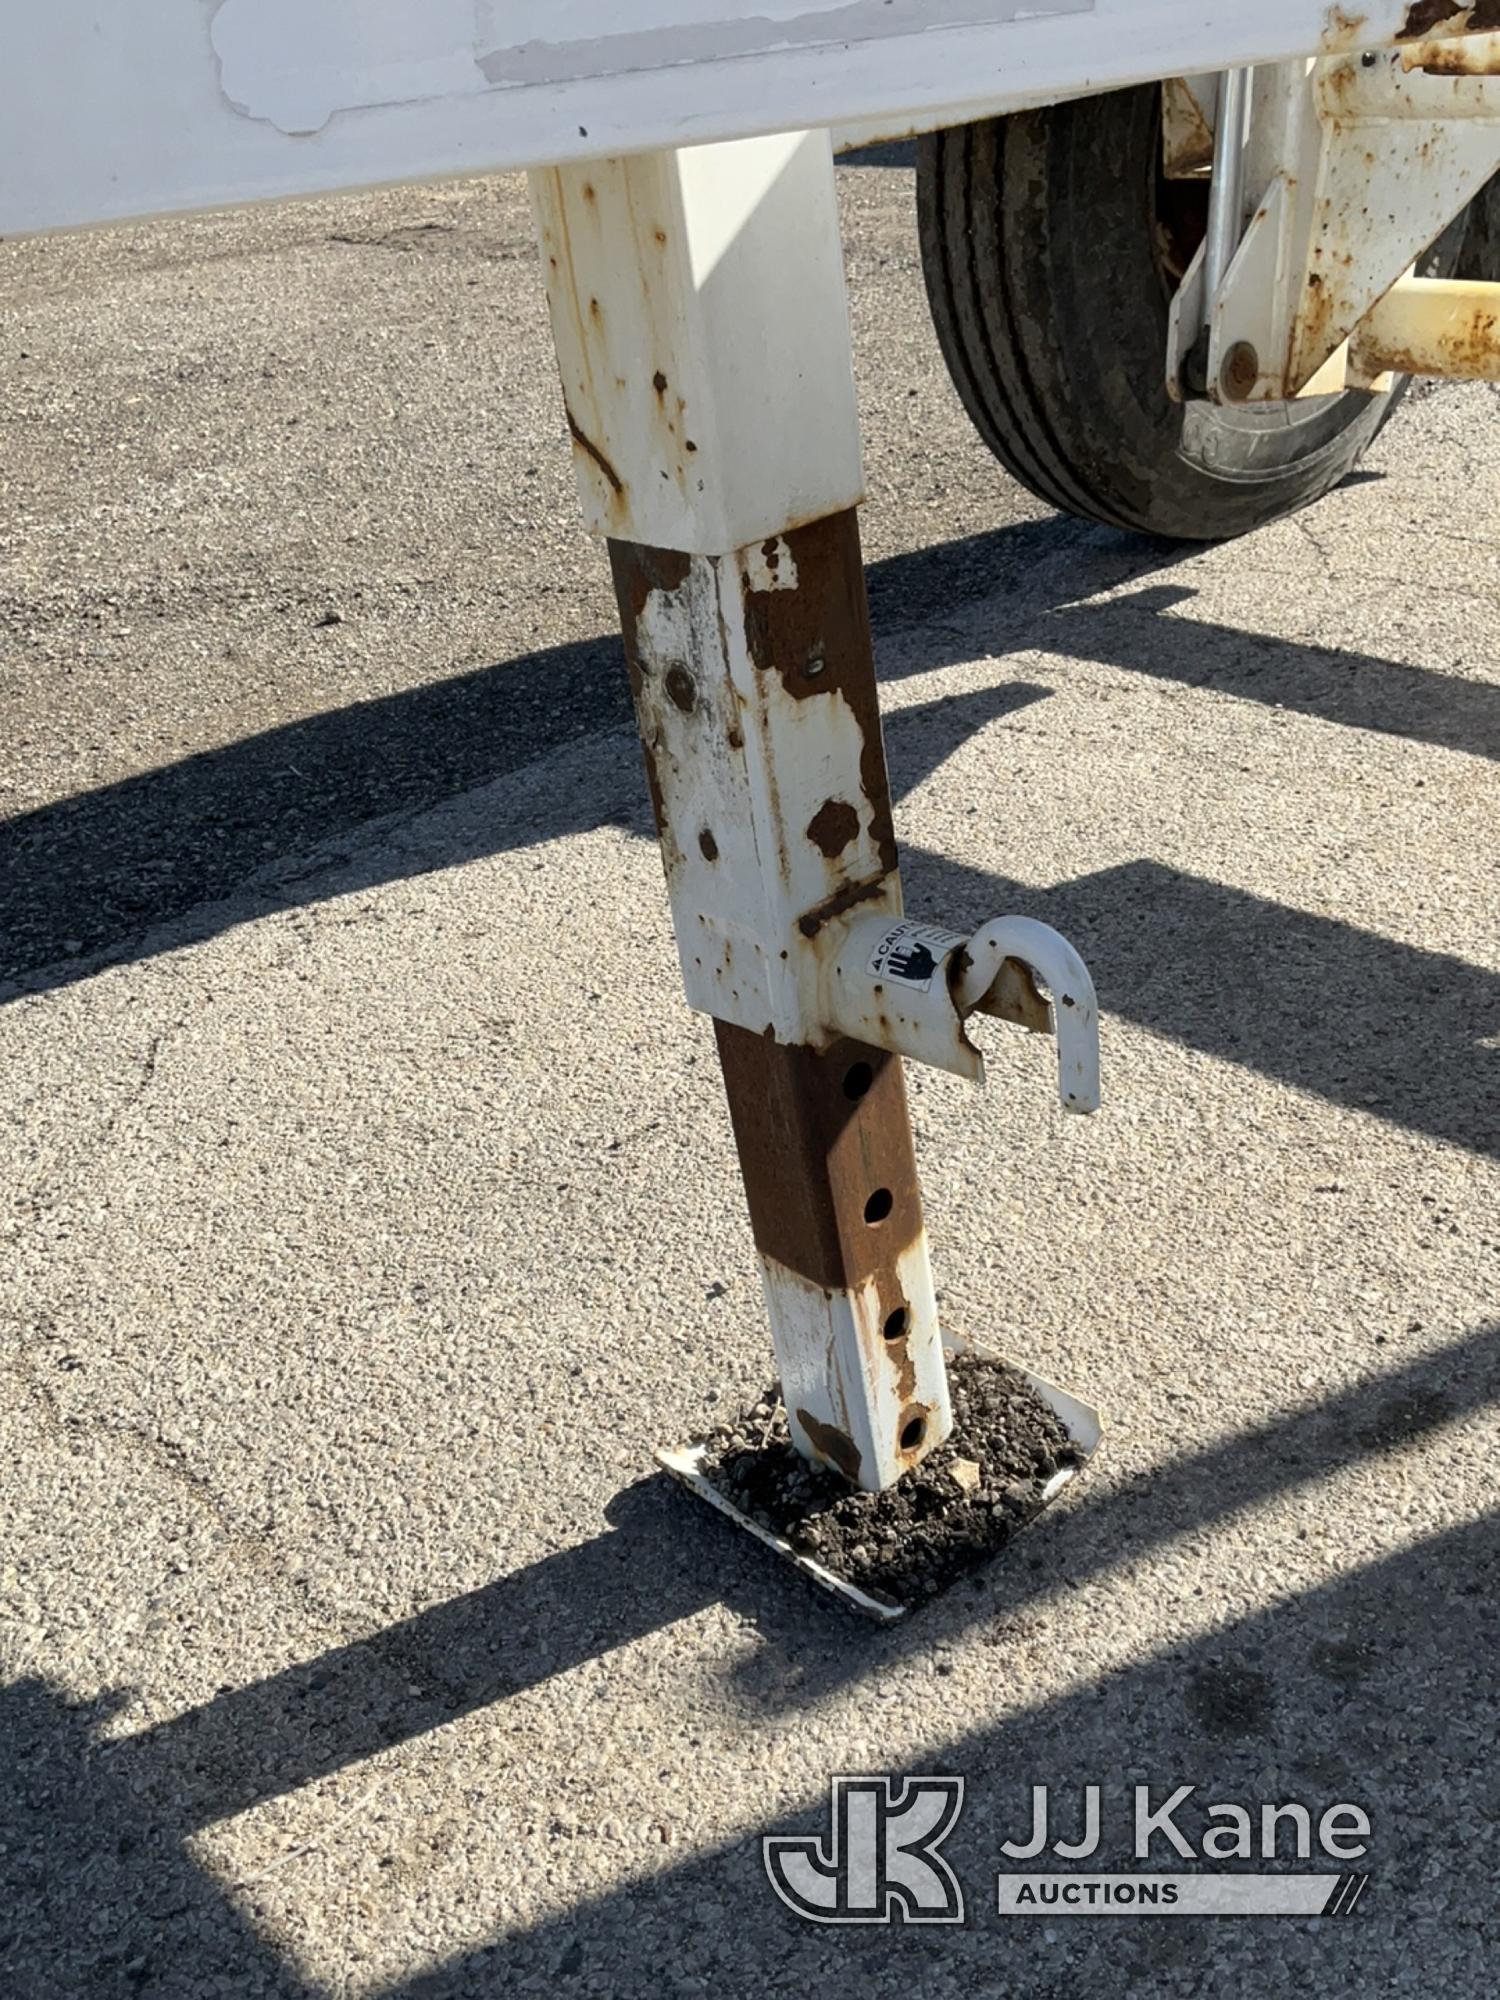 (South Beloit, IL) 2019 Butler HWSC-10 Self-Loading Hydraulic Reel Trailer Operates